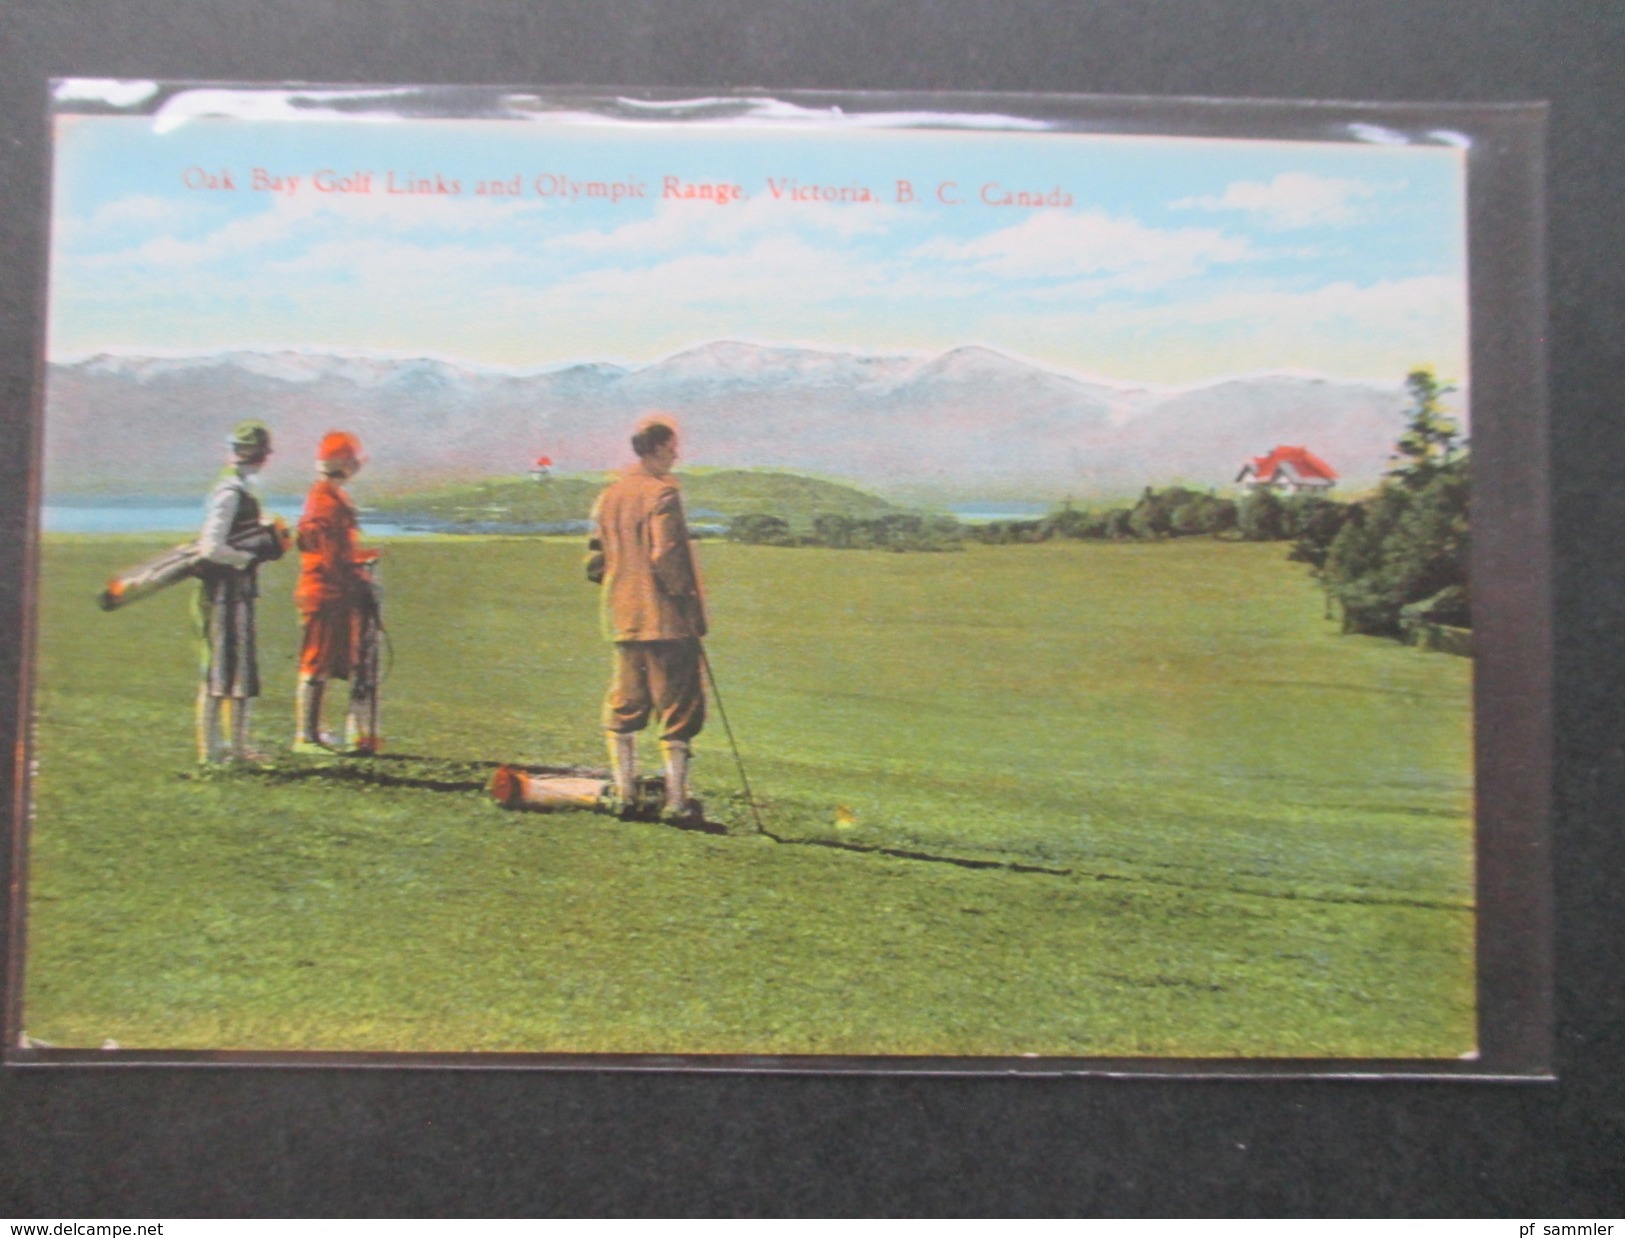 AK Ca. 1910er Jahre Oak Bay Golf Links And Olympic Rnge Victoria B.C. Canada. Golfspieler / Golfplatz - Golf